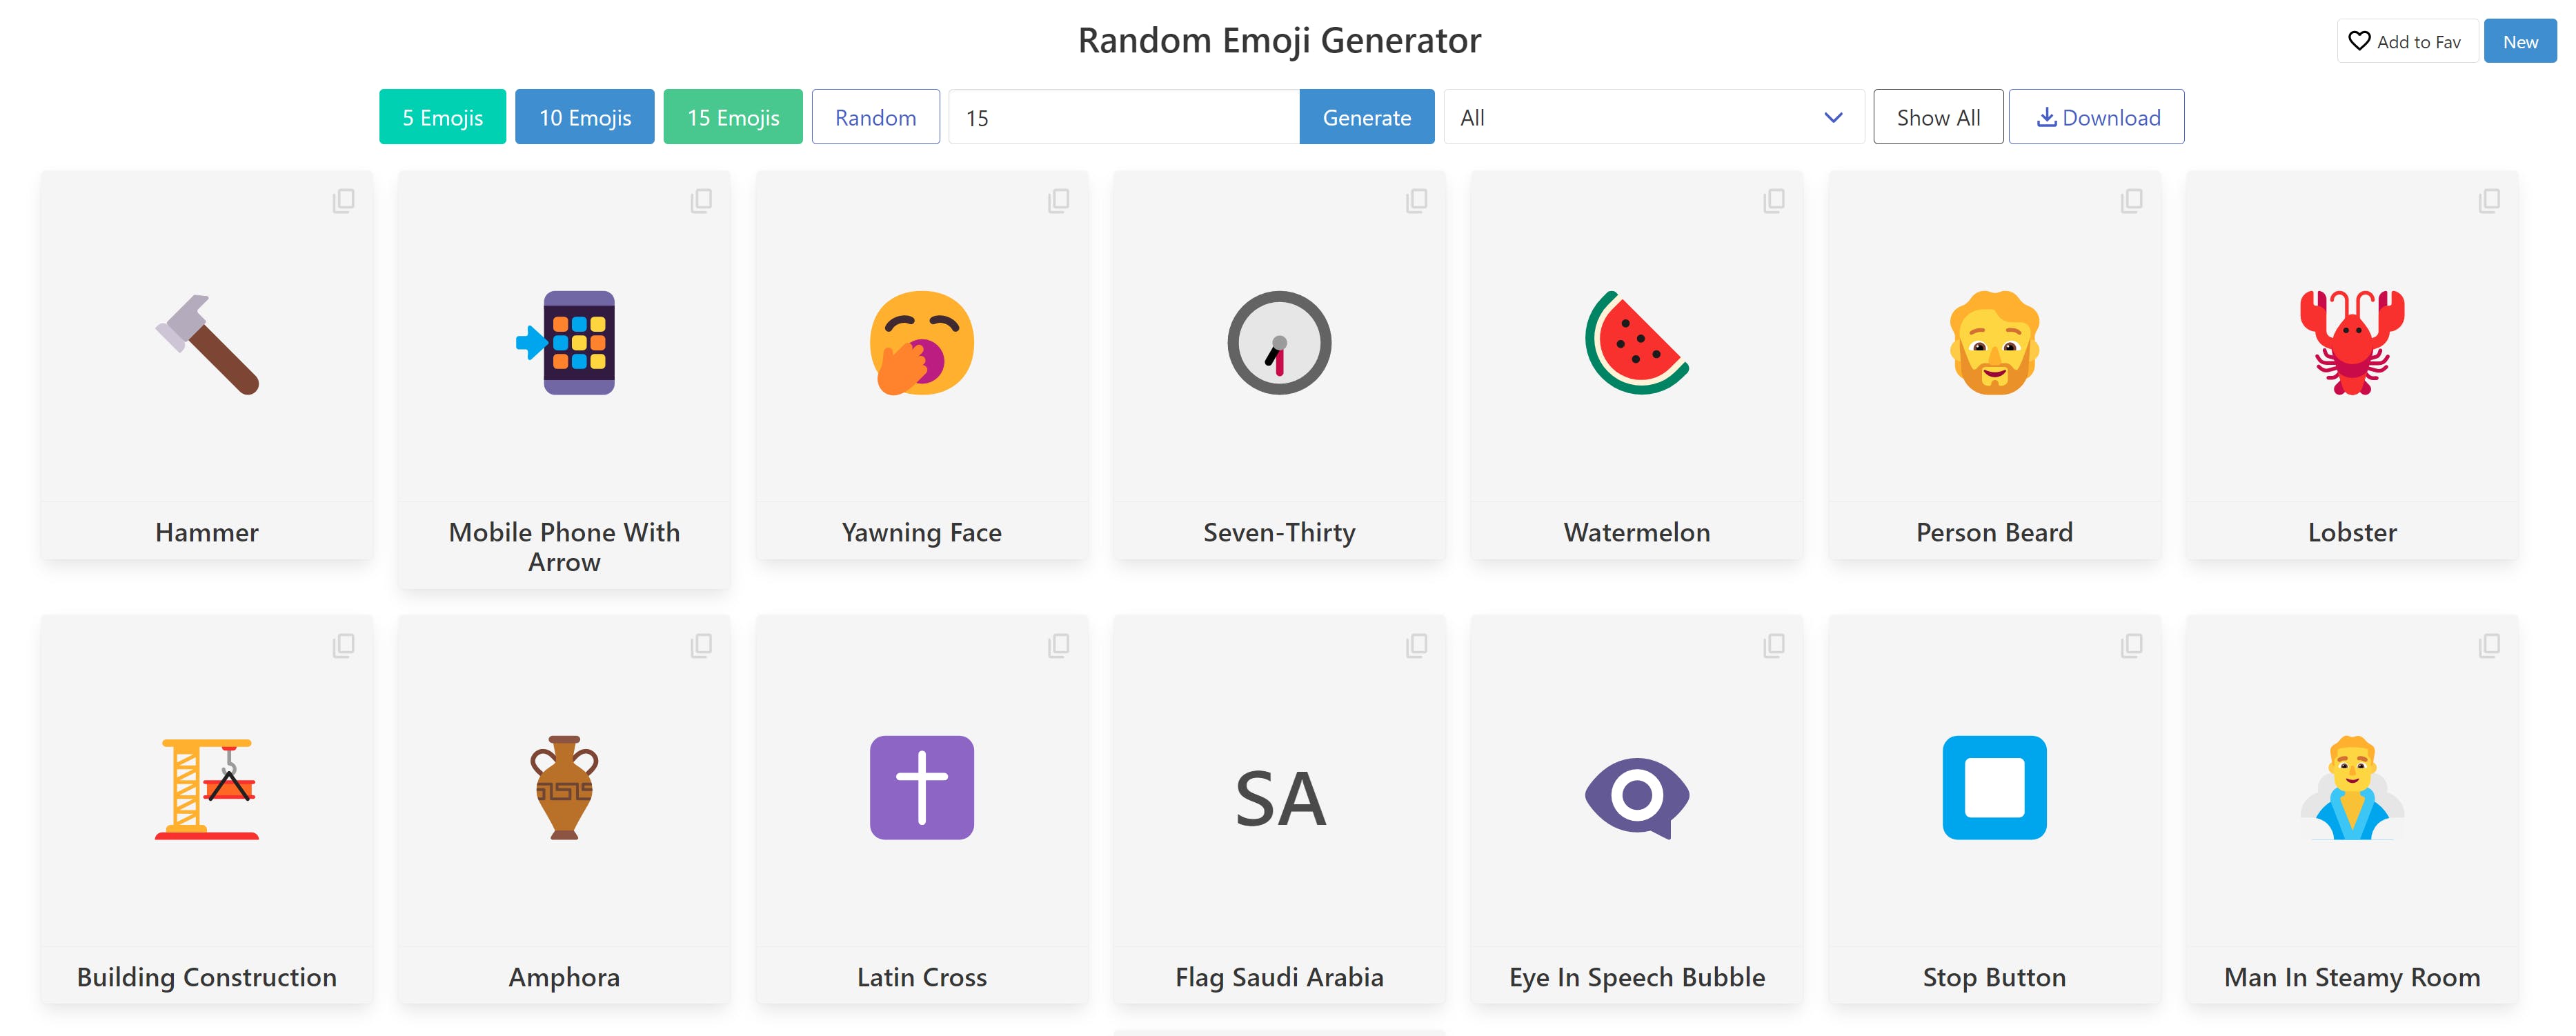 Random Emoji Generator media 1